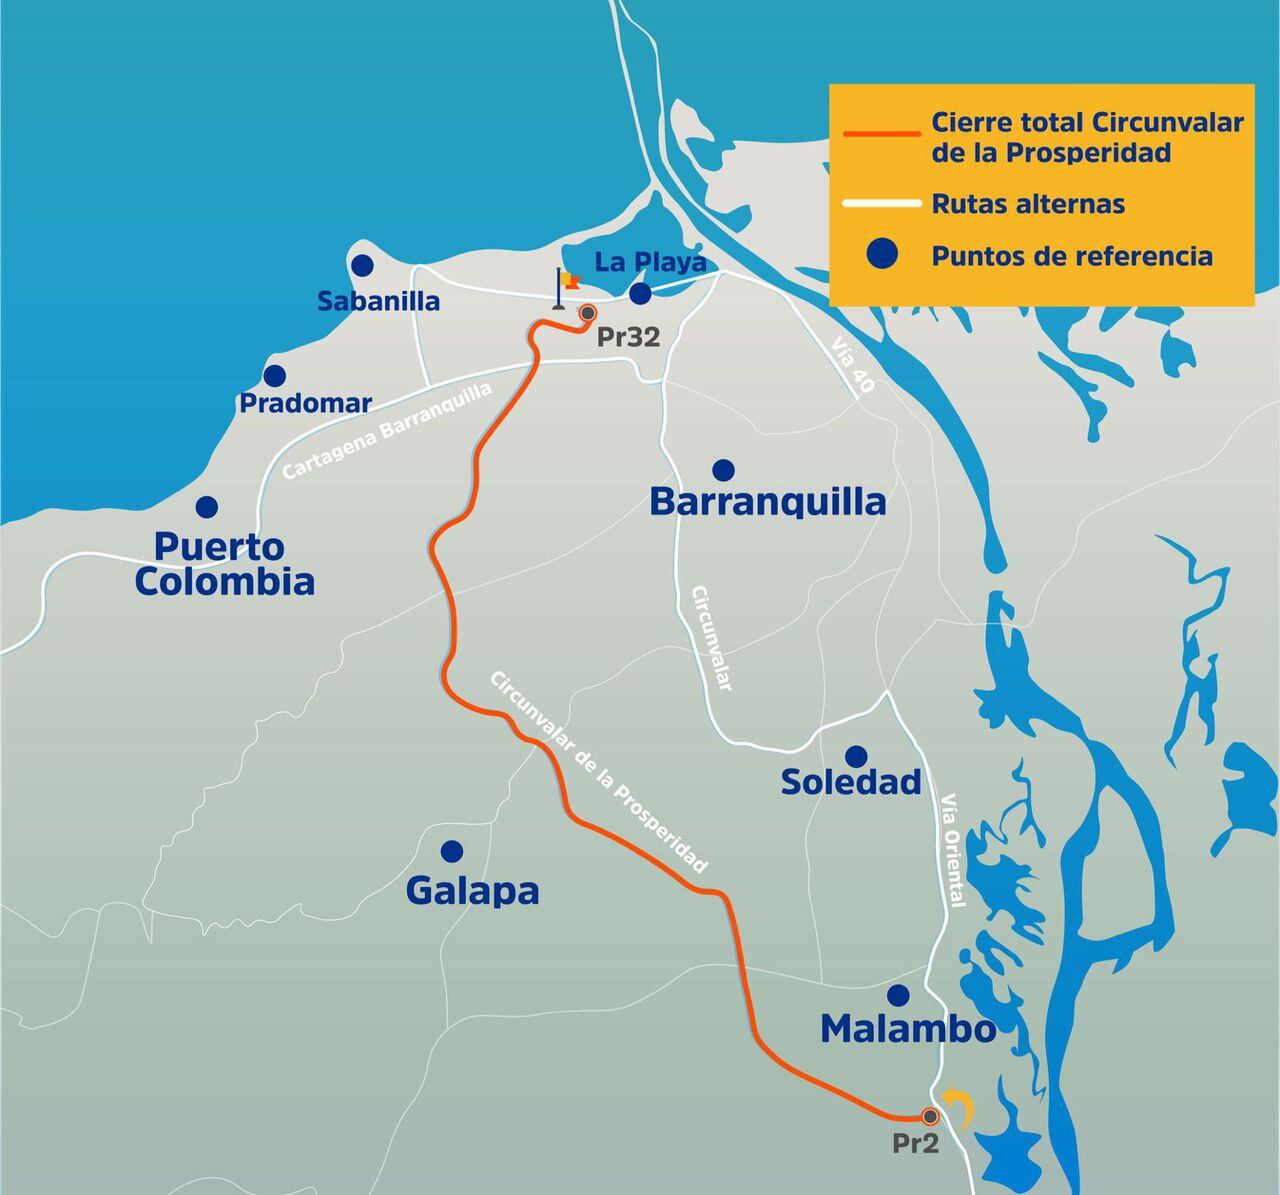 La vía Circunvalar de la Prosperidad estará cerrada entre Malambo y el corregimiento La Playa, en Barranquilla